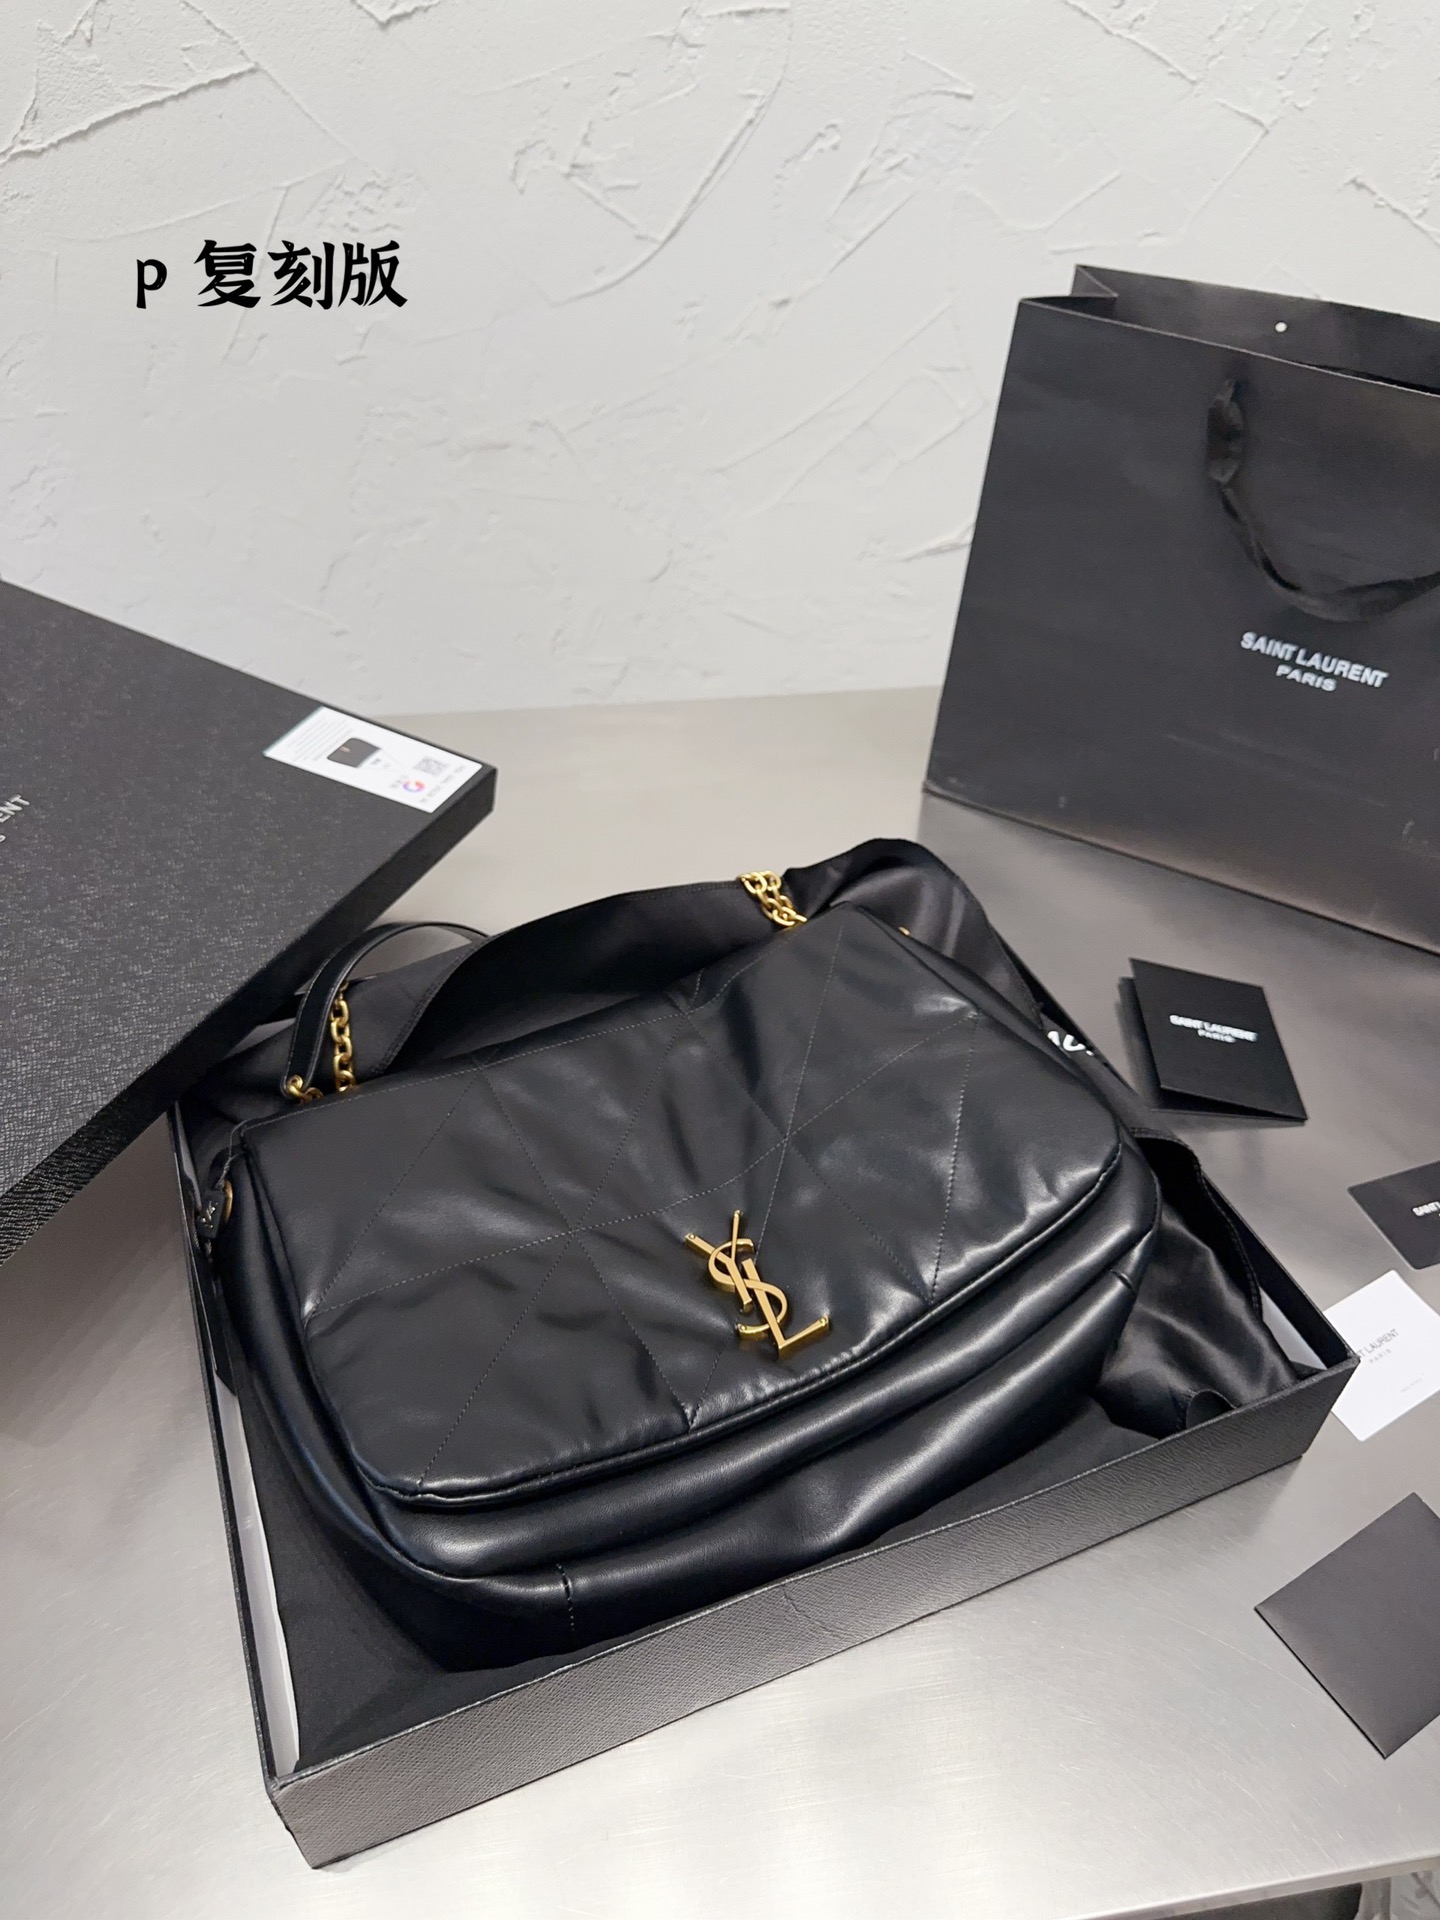 Find replica
 Yves Saint Laurent Handbags Tote Bags Rose